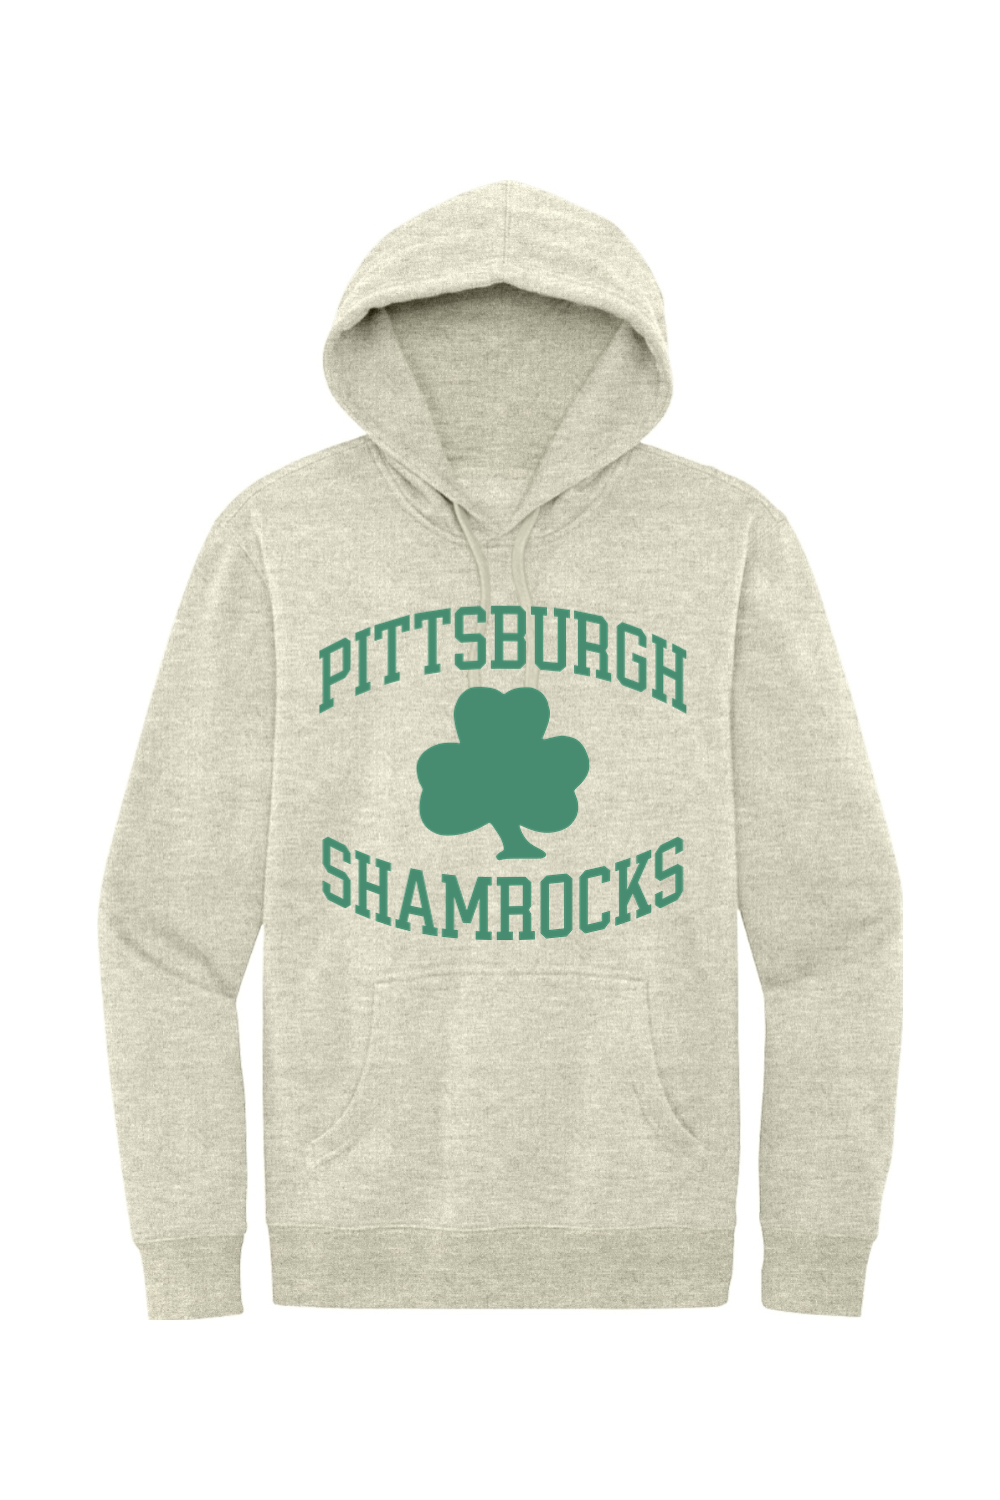 Pittsburgh Shamrocks Hockey - Fleece Hoodie - Yinzylvania